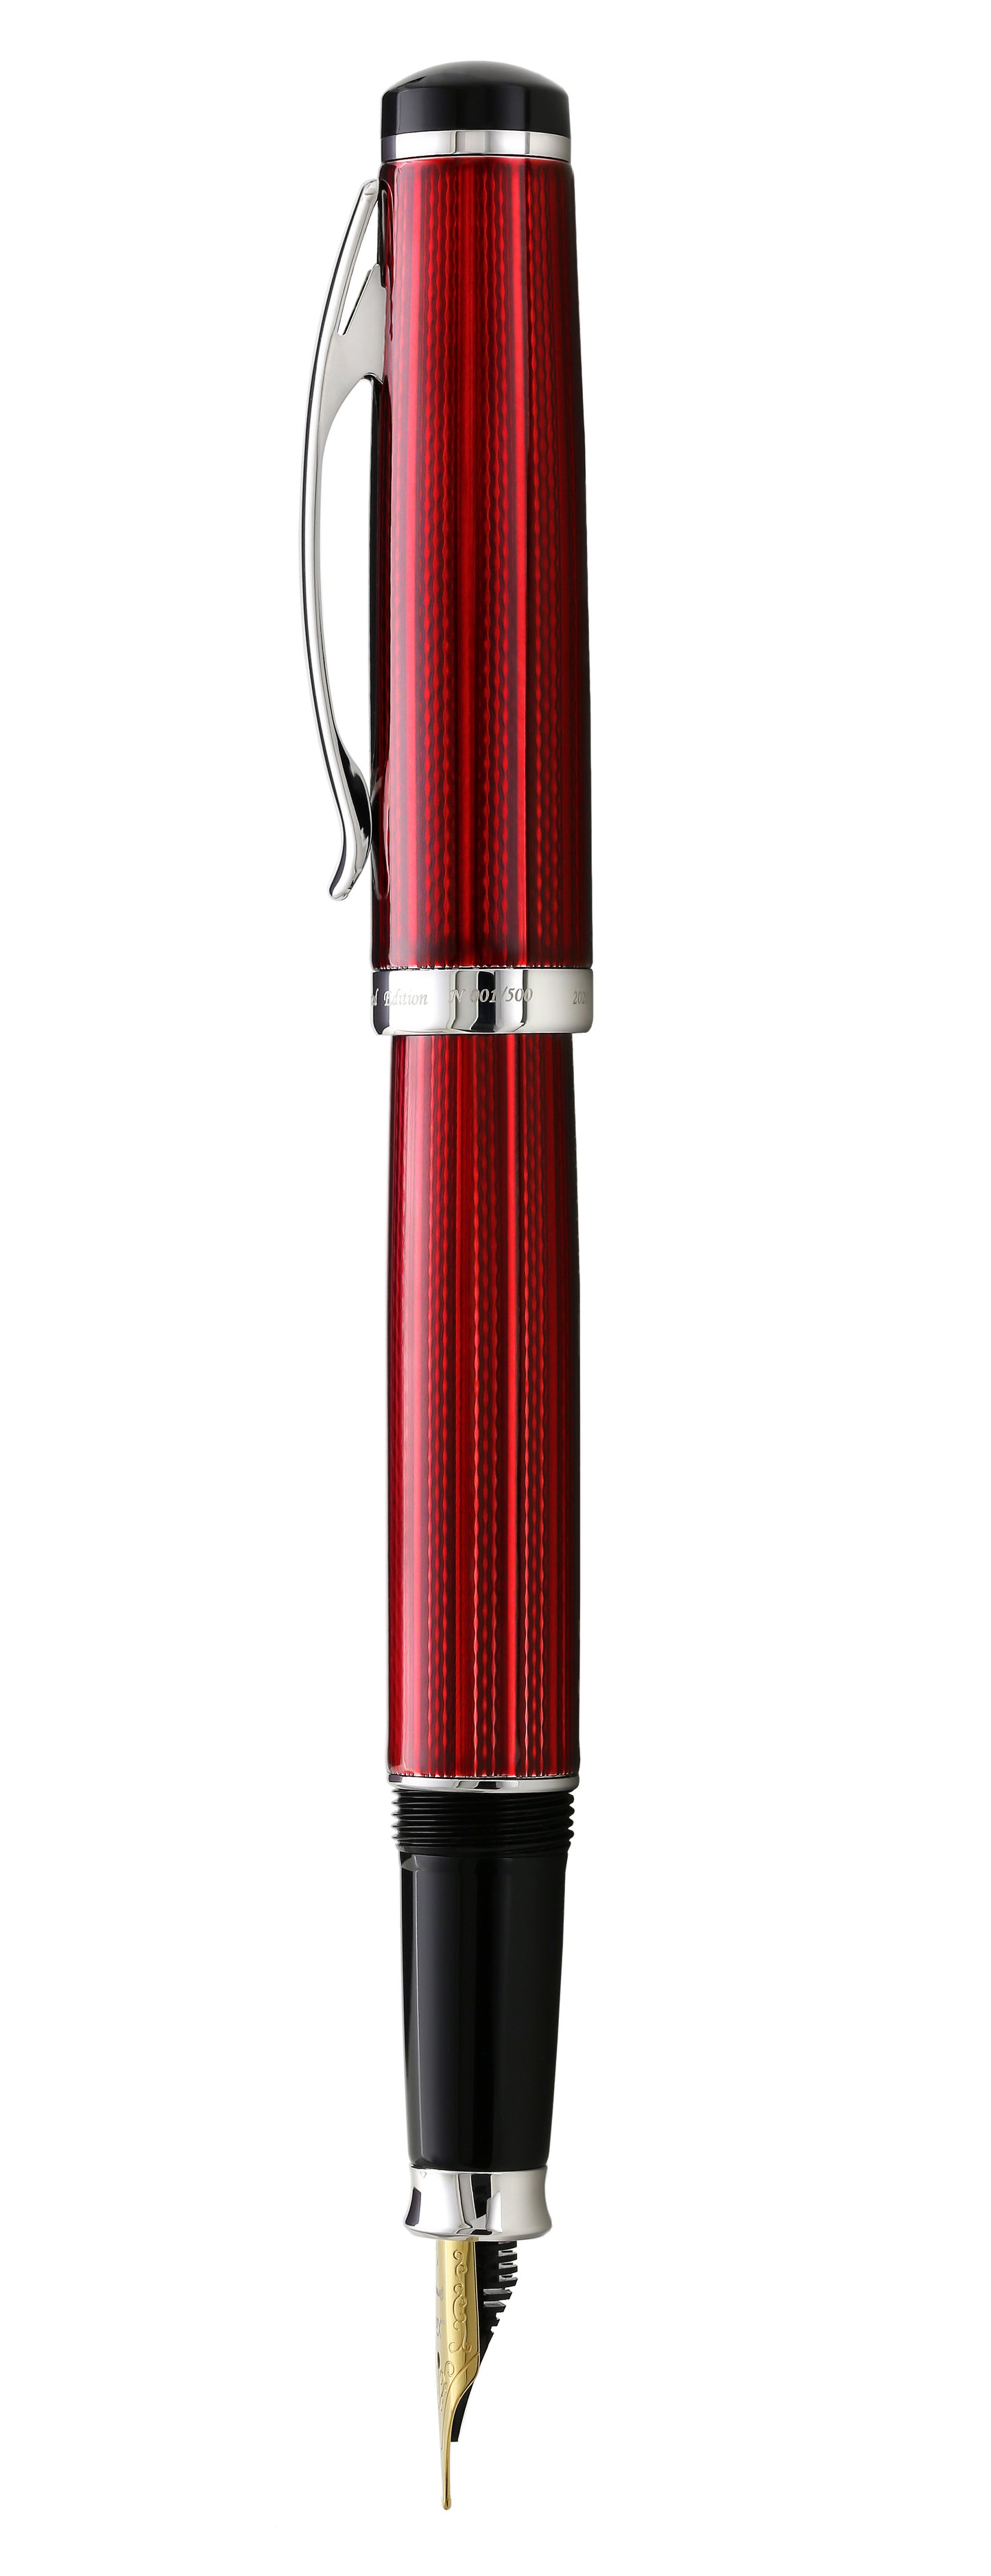 Xezo - Side view of the Incognito Burgundy F-1 fountain pen